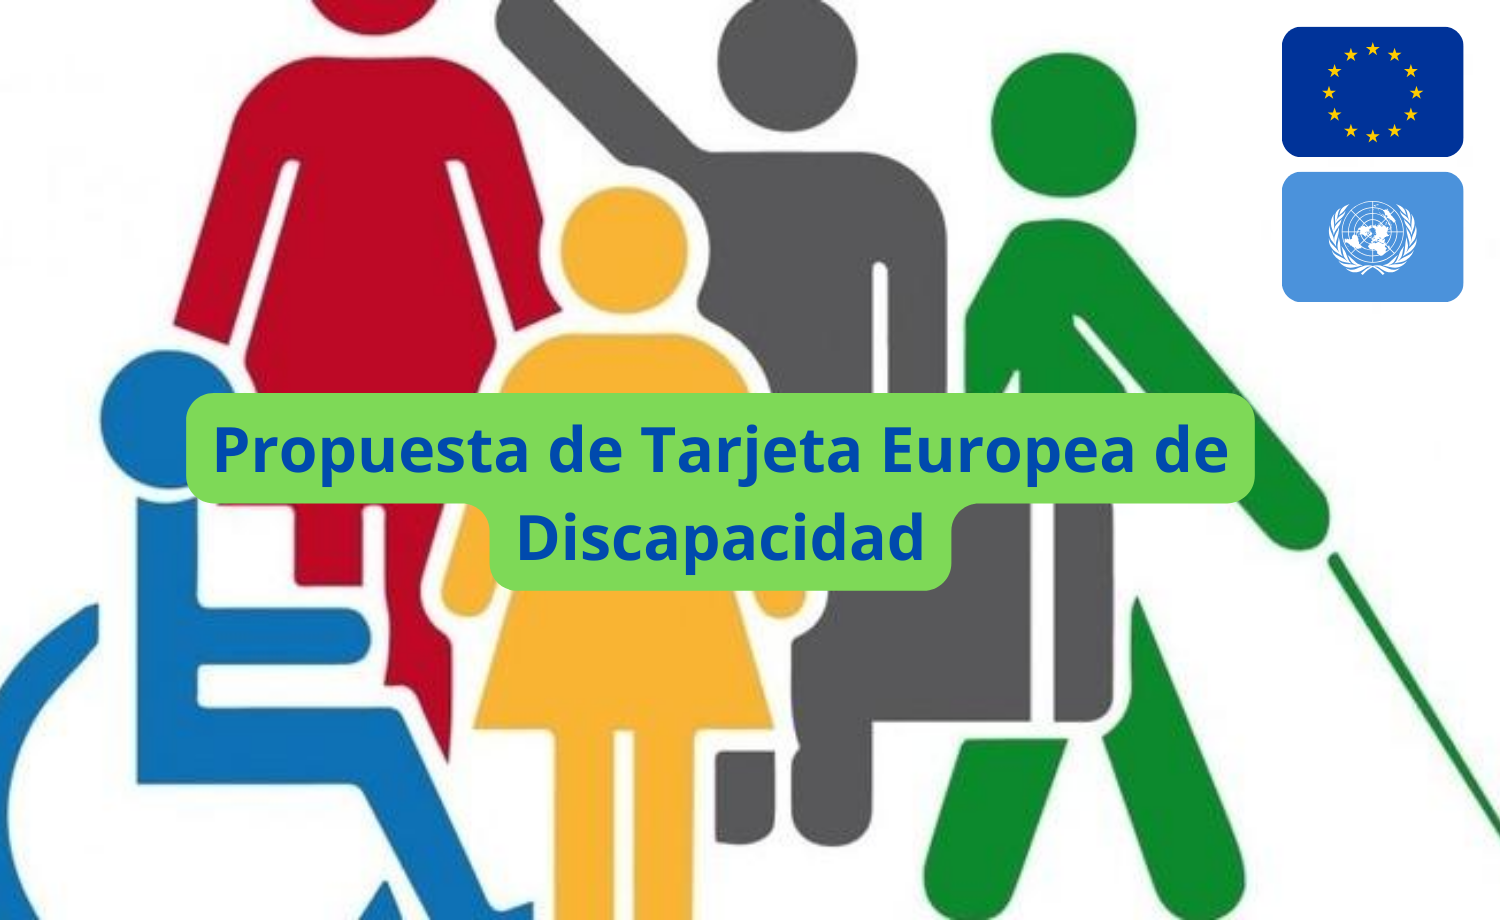 Propuesta de Tarjeta Europea de Discapacidad